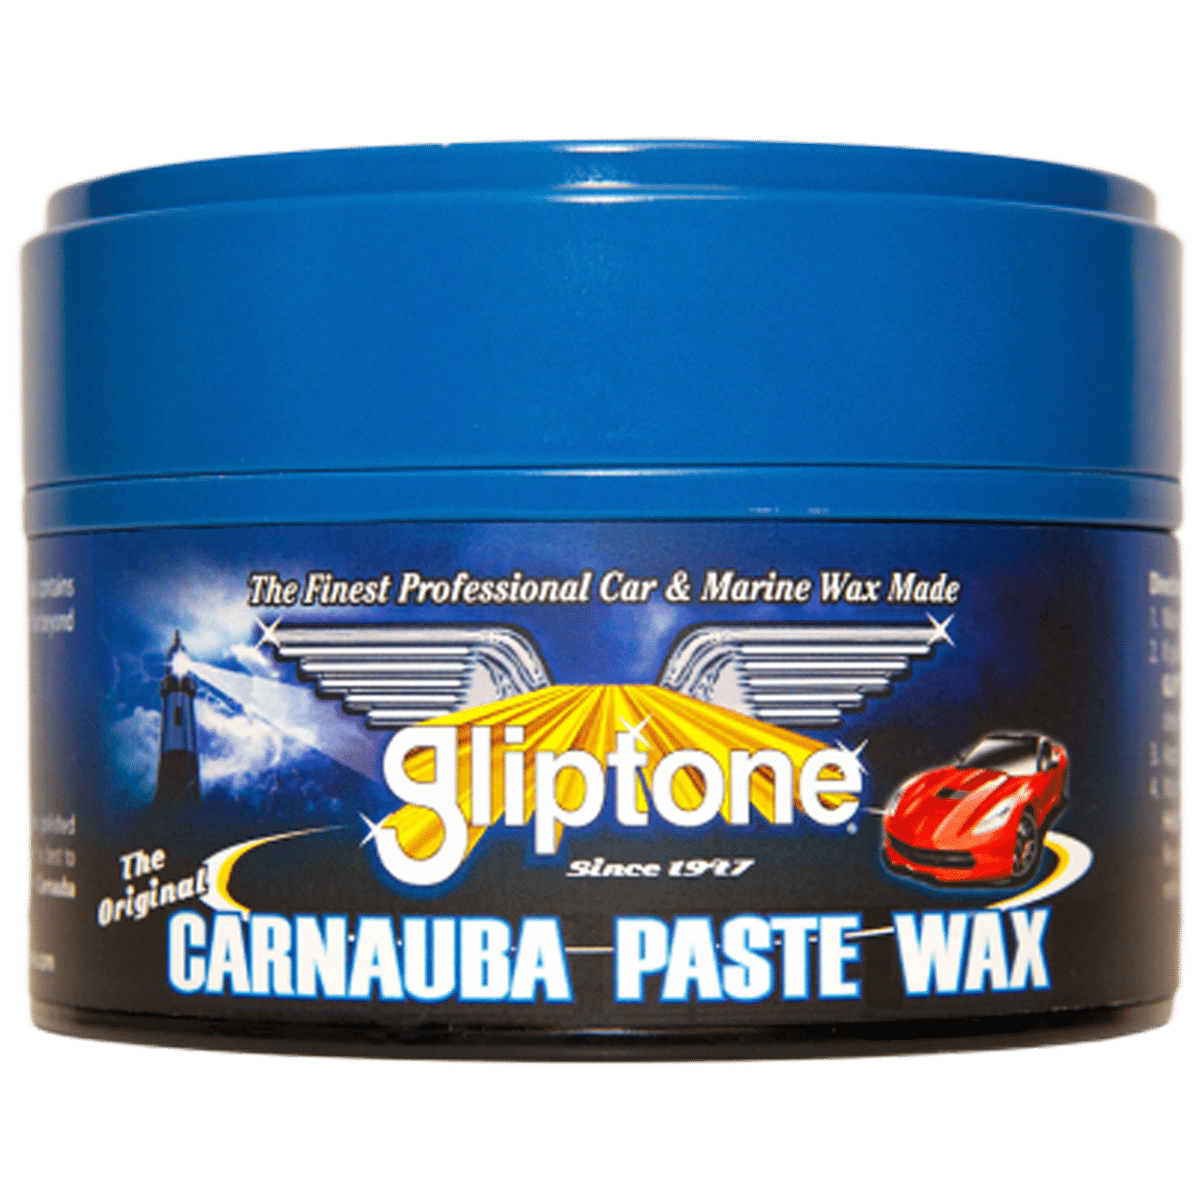 GLIPTONE Carnauba Paste Wax 300g Twardy Wosk z Dużą Zawartością Brazylijskiej Carnauby